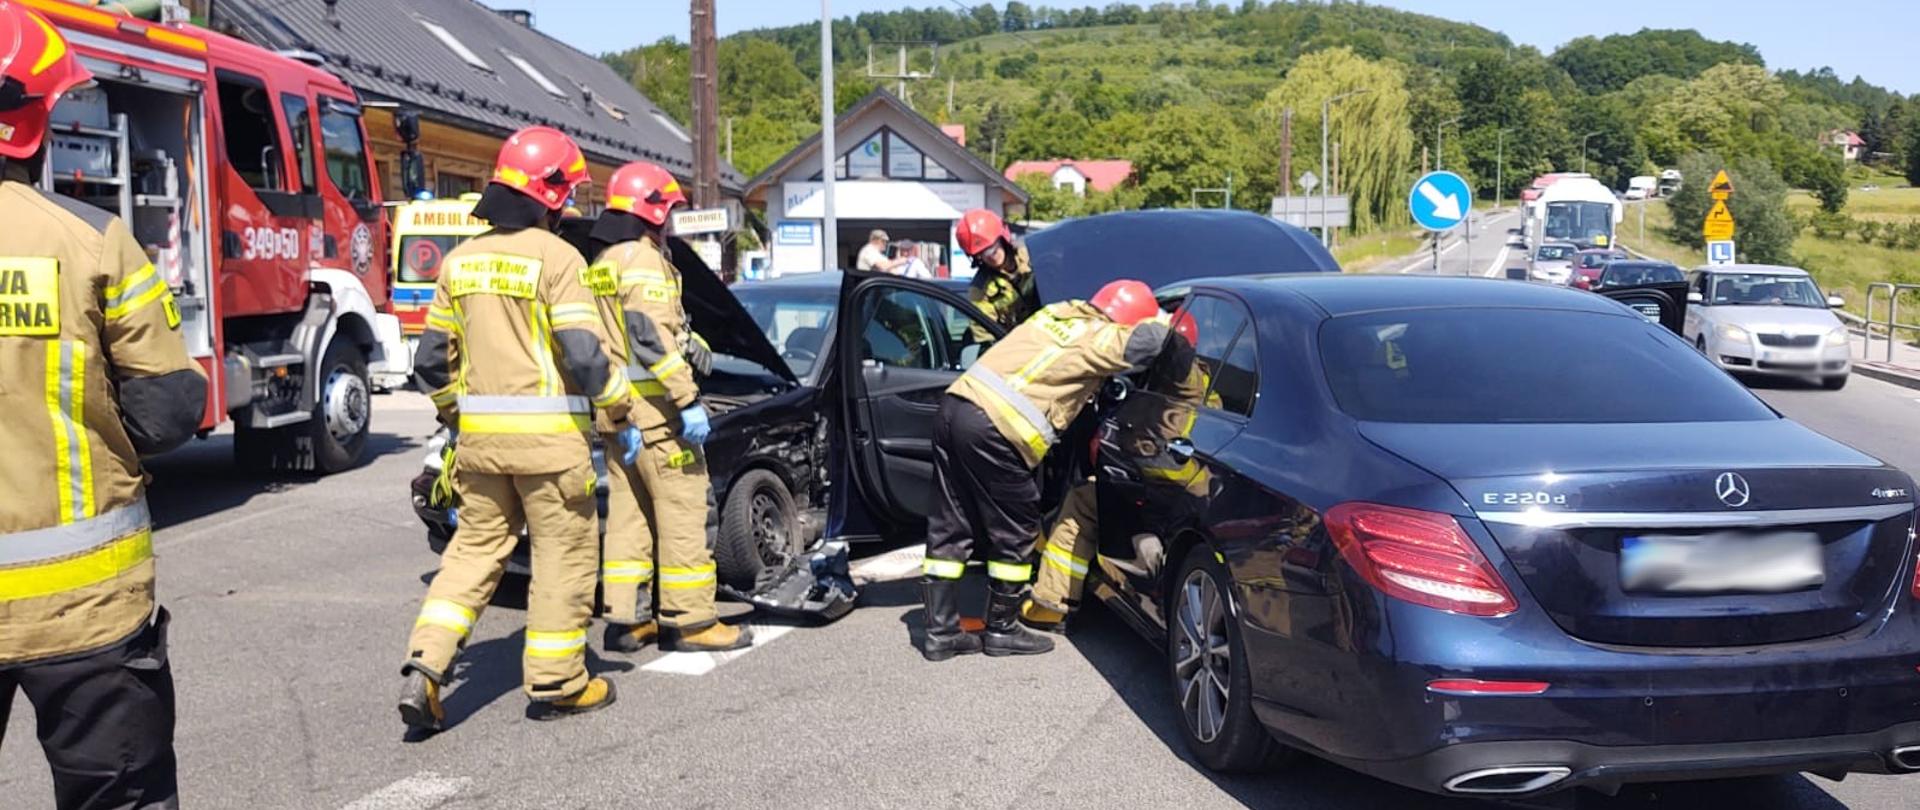 Strażacy prowadzą działania przy uszkodzonych samochodach